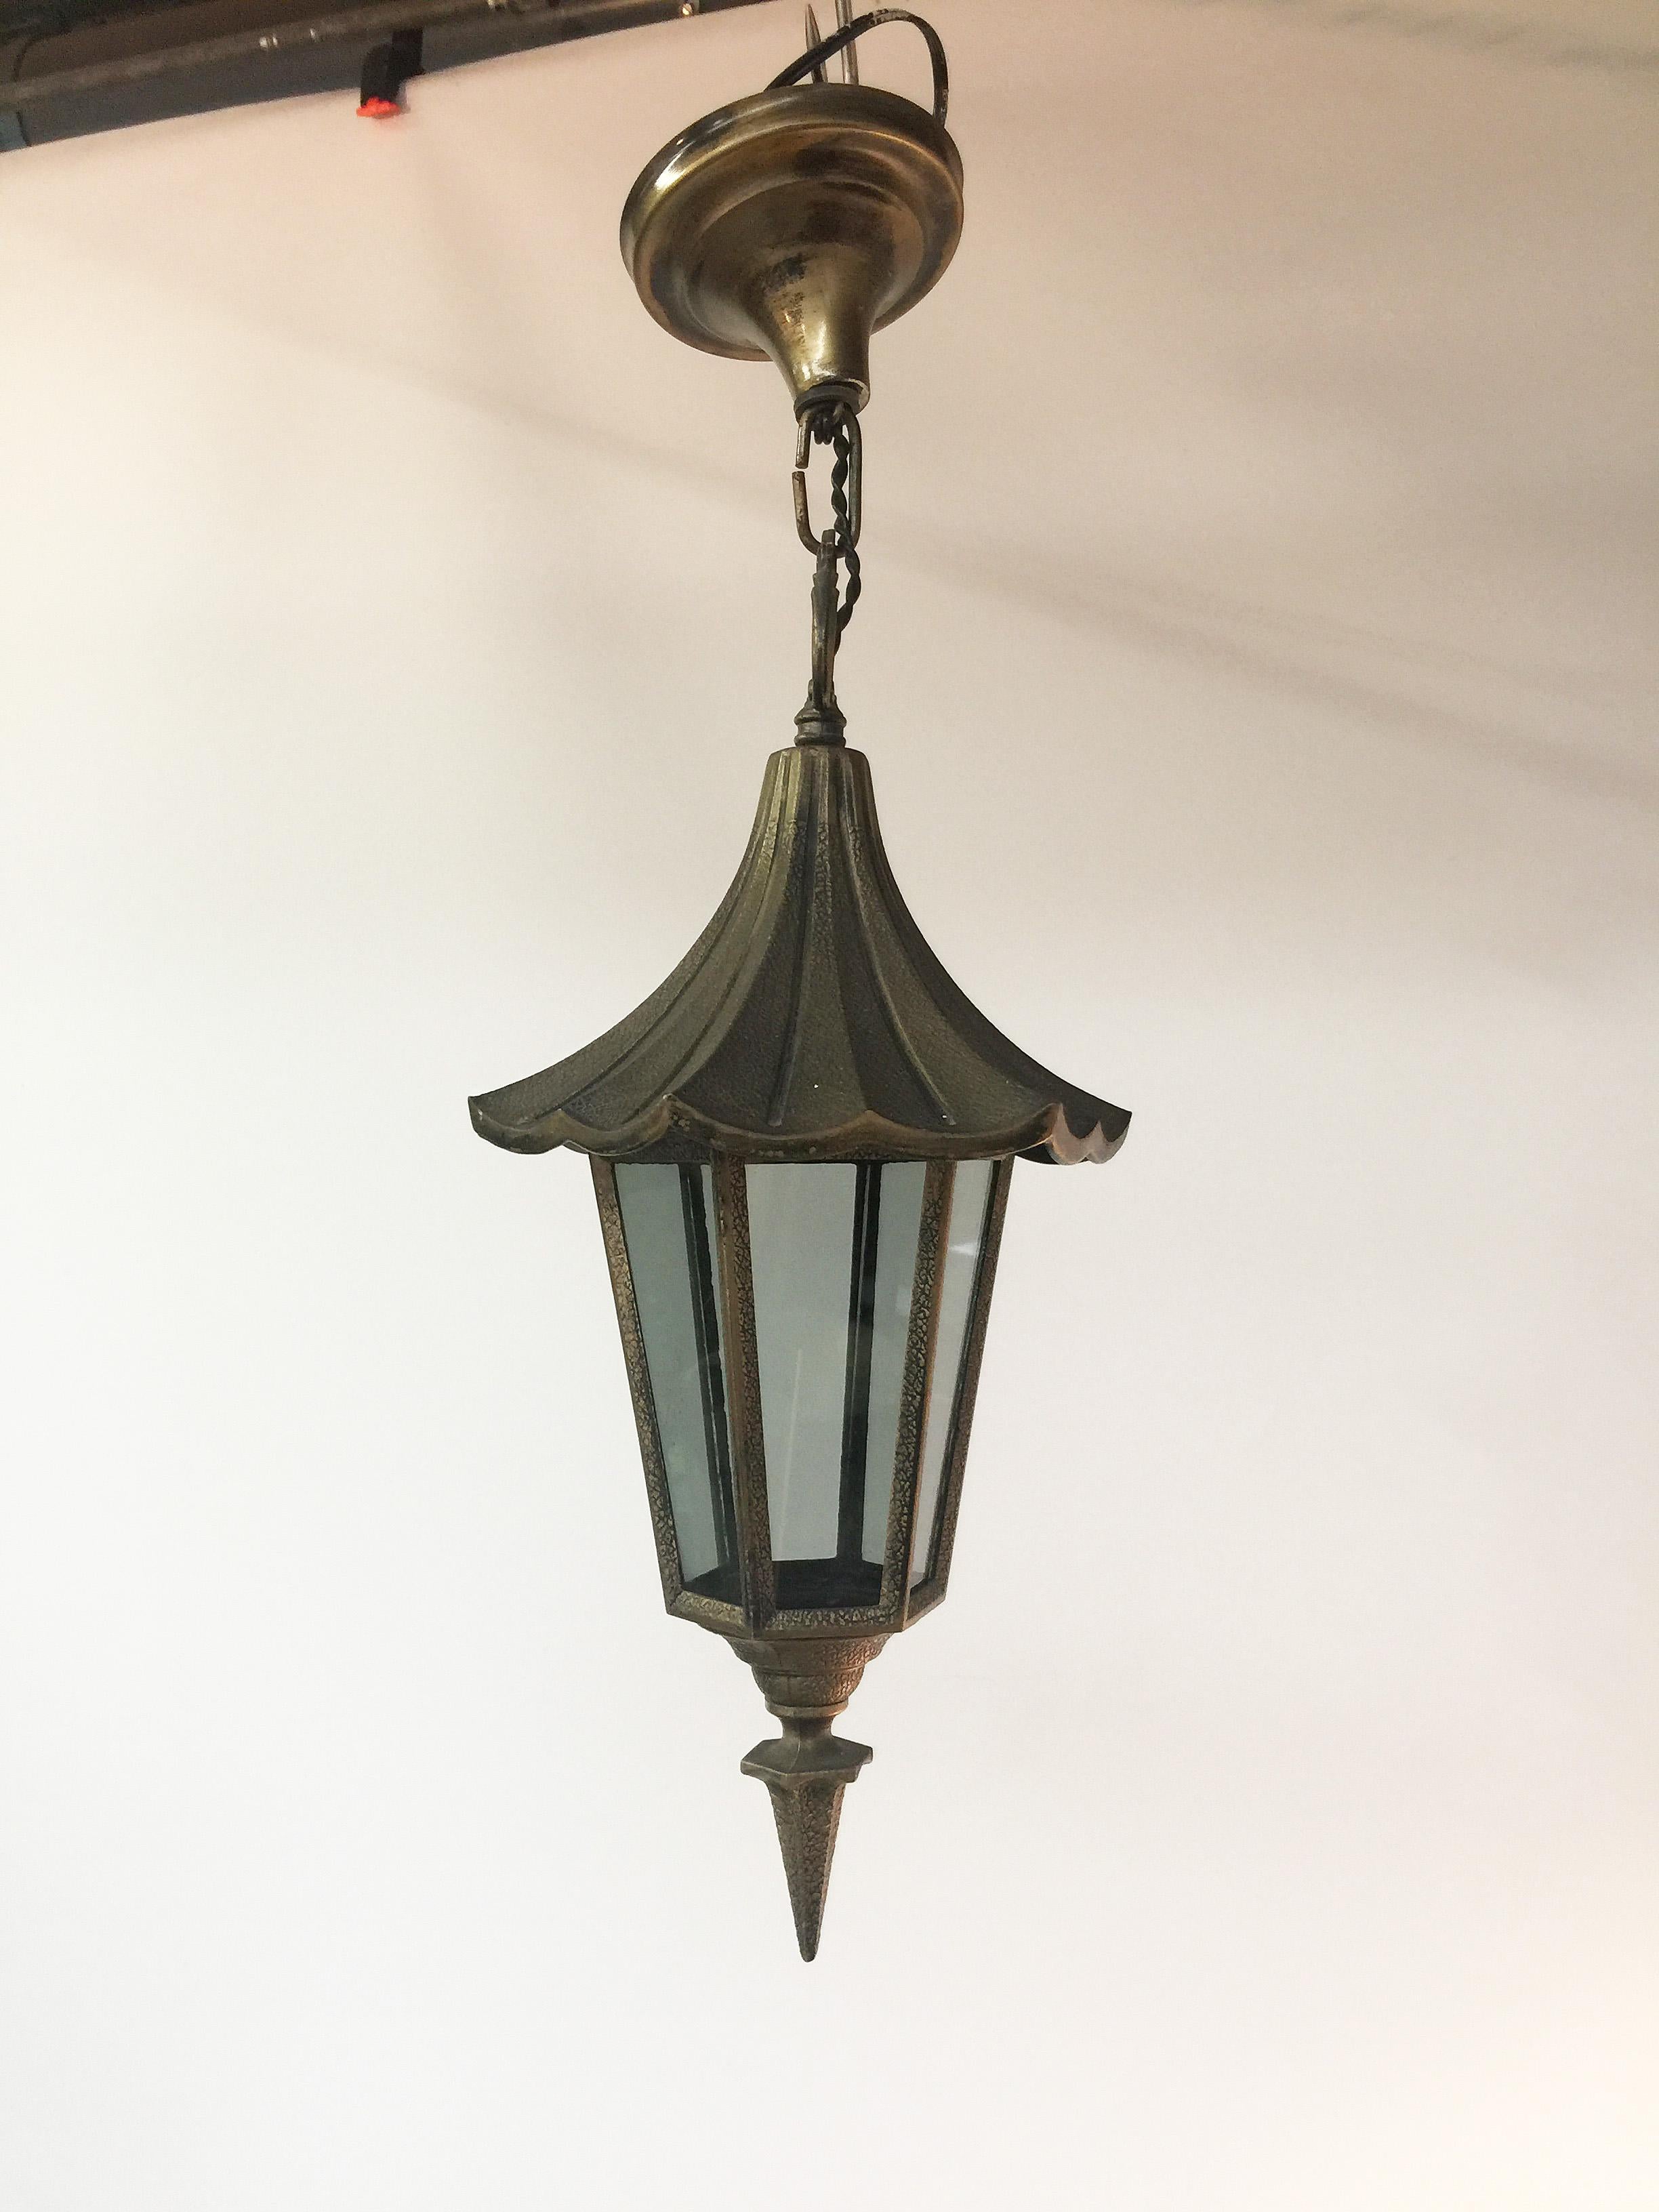 Lanterne suspendue de style pagode en métal français, vers 1950
Mesures : Diamètre 20 cm
Hauteur 38 et 54 cm.